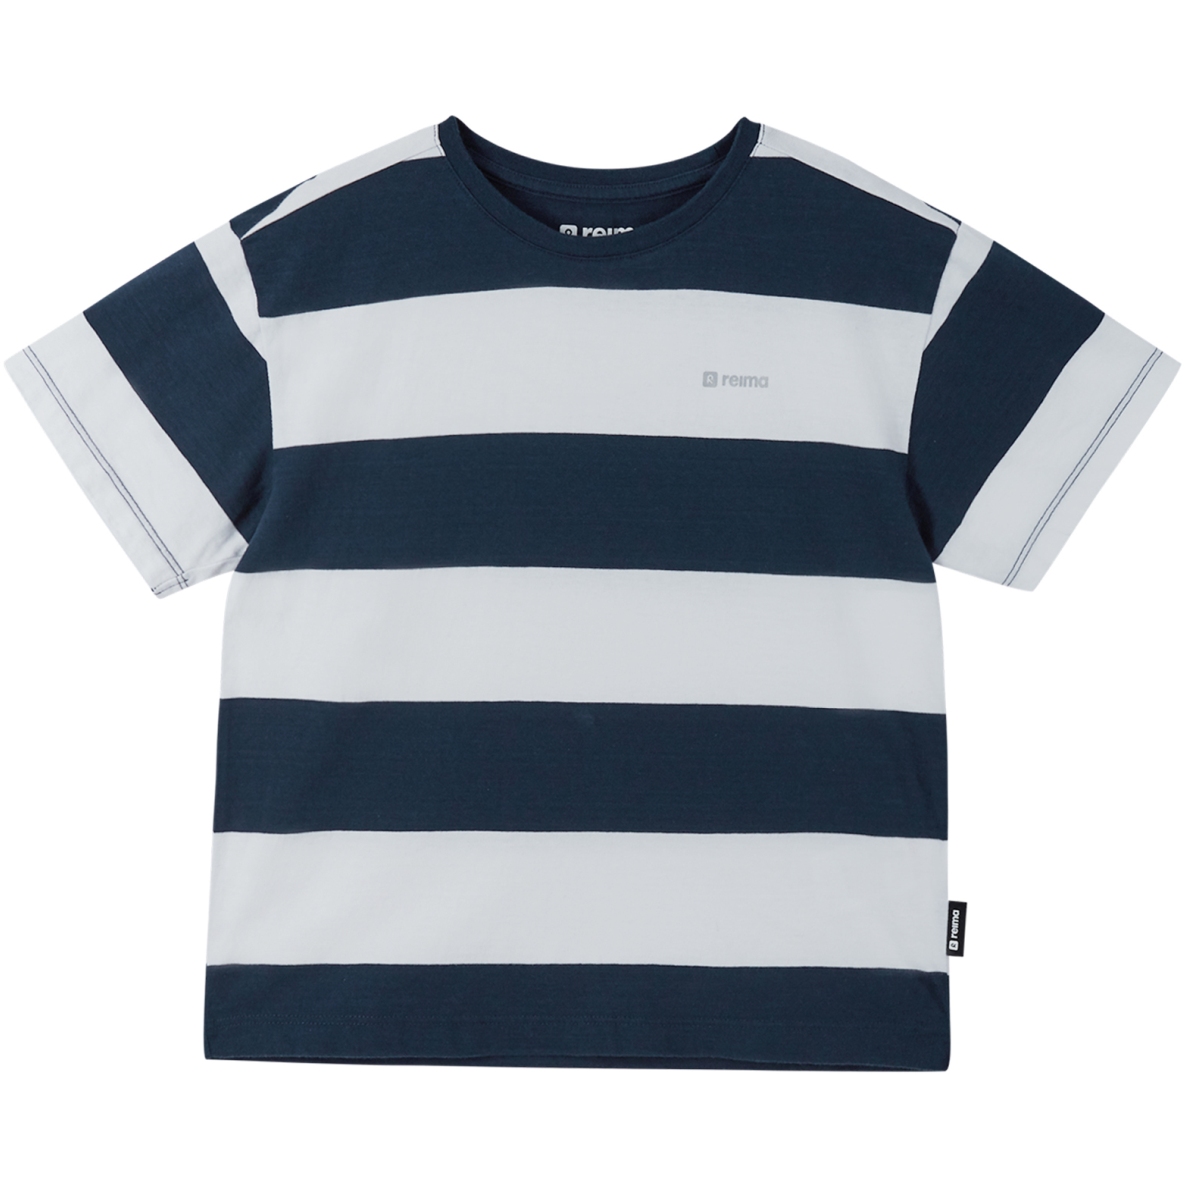 Produktbild von Reima Kinder T-Shirt Rannut - navy 6986